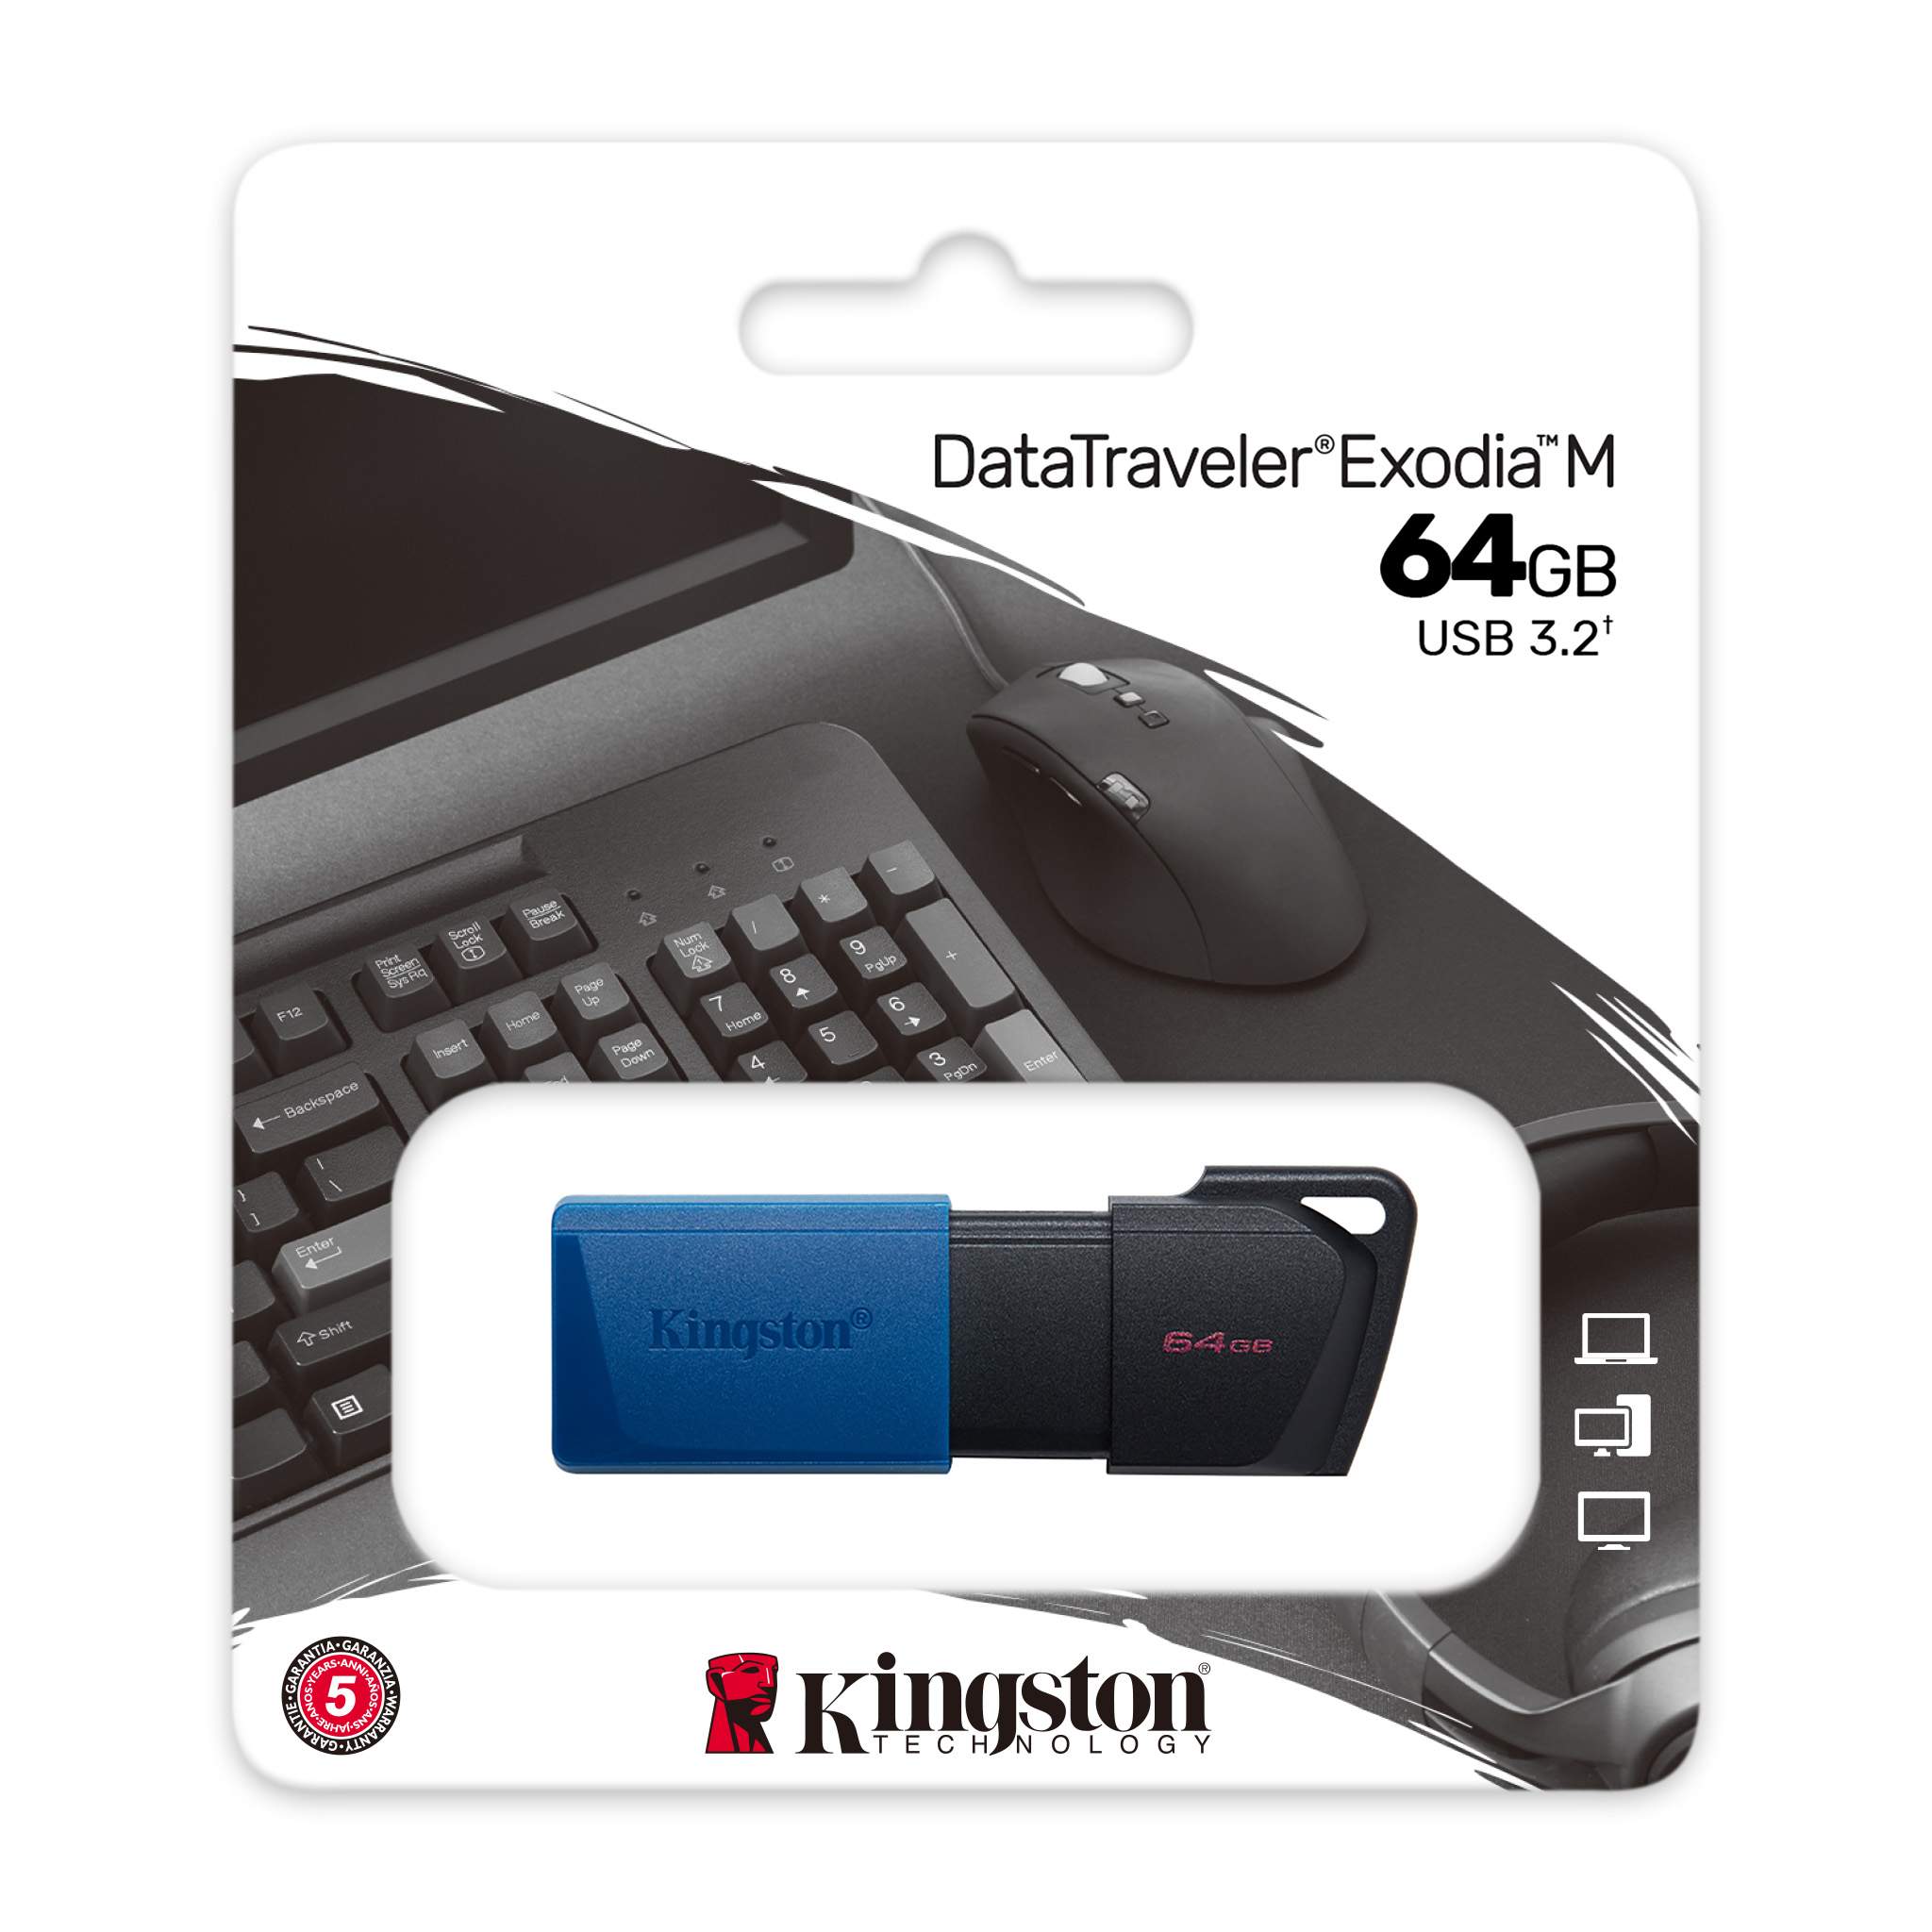 DataTraveler Exodia M 64GB USB Flash Drive